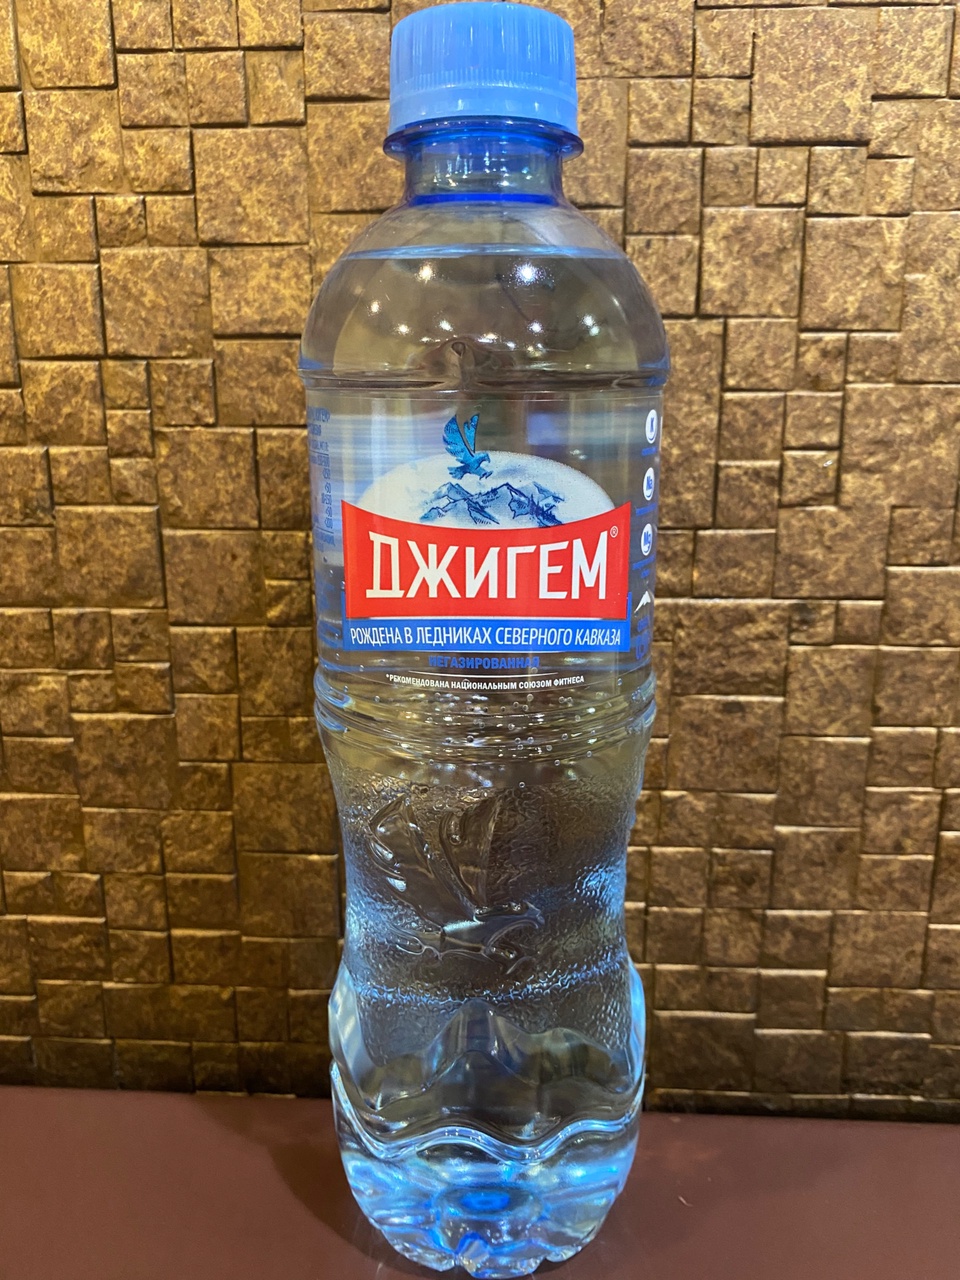 Вода питьевая - 40 ₽, заказать онлайн.